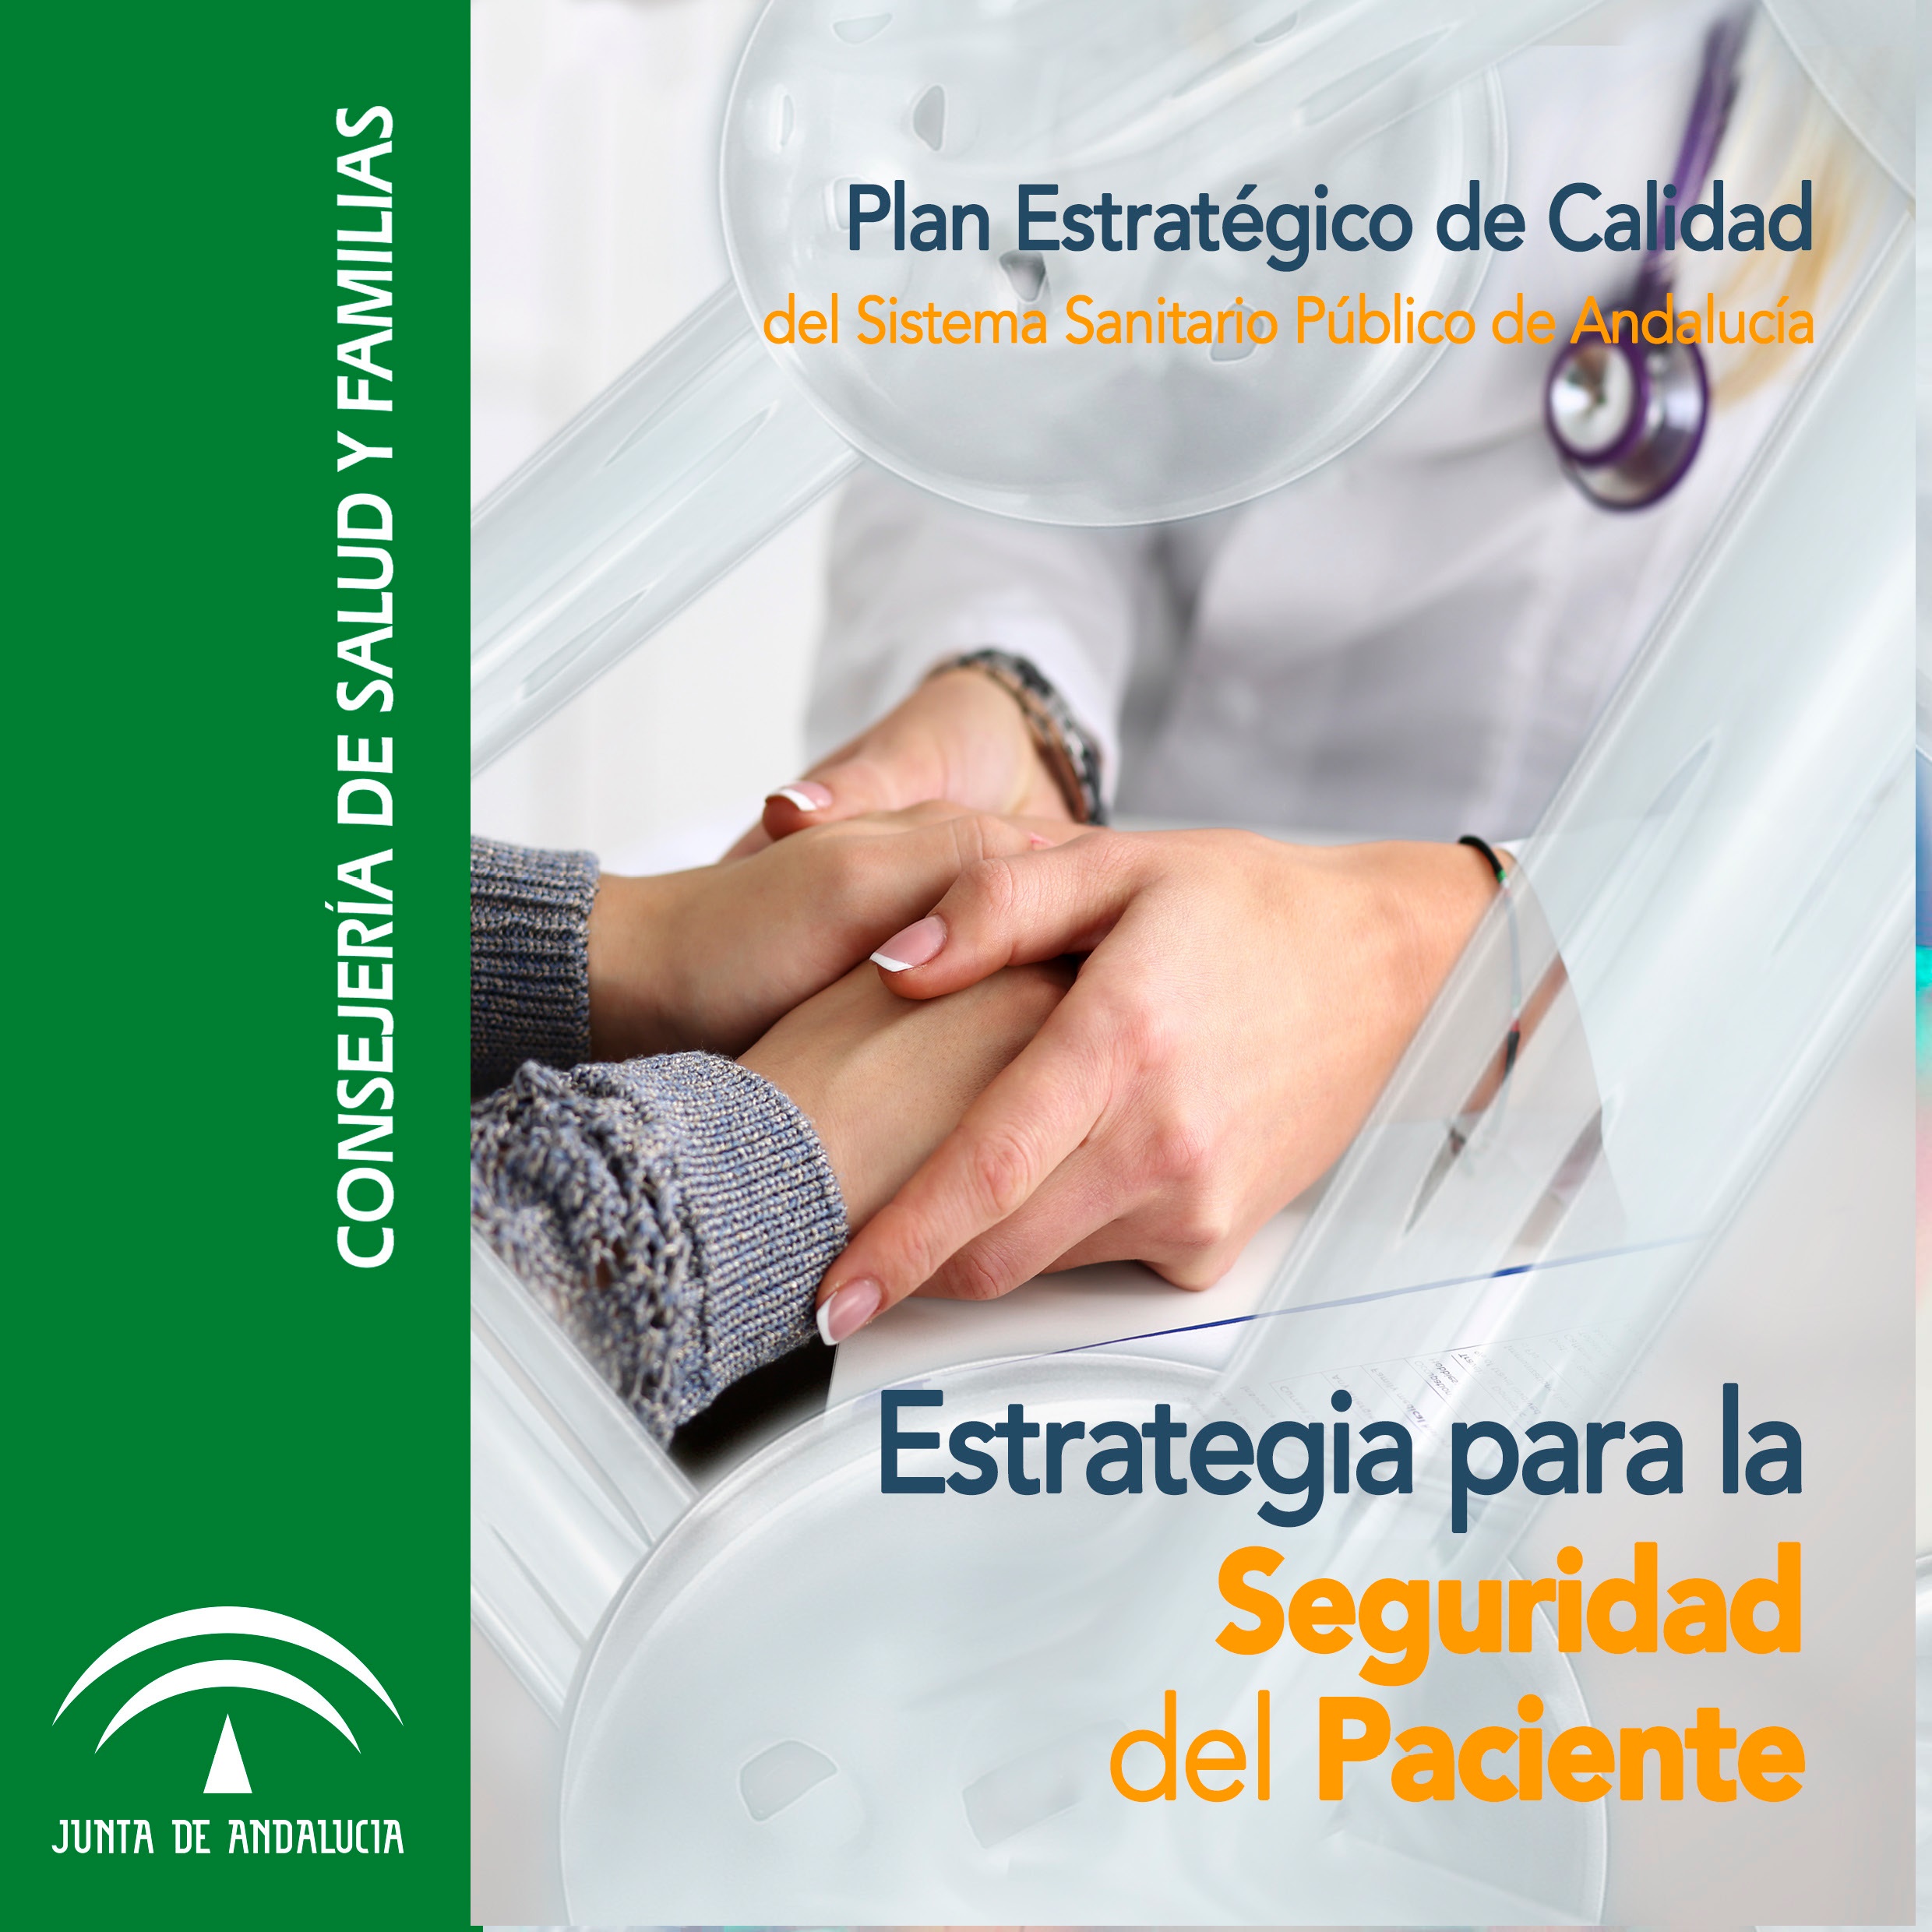 Estrategia para la Seguridad del Paciente de Andalucía